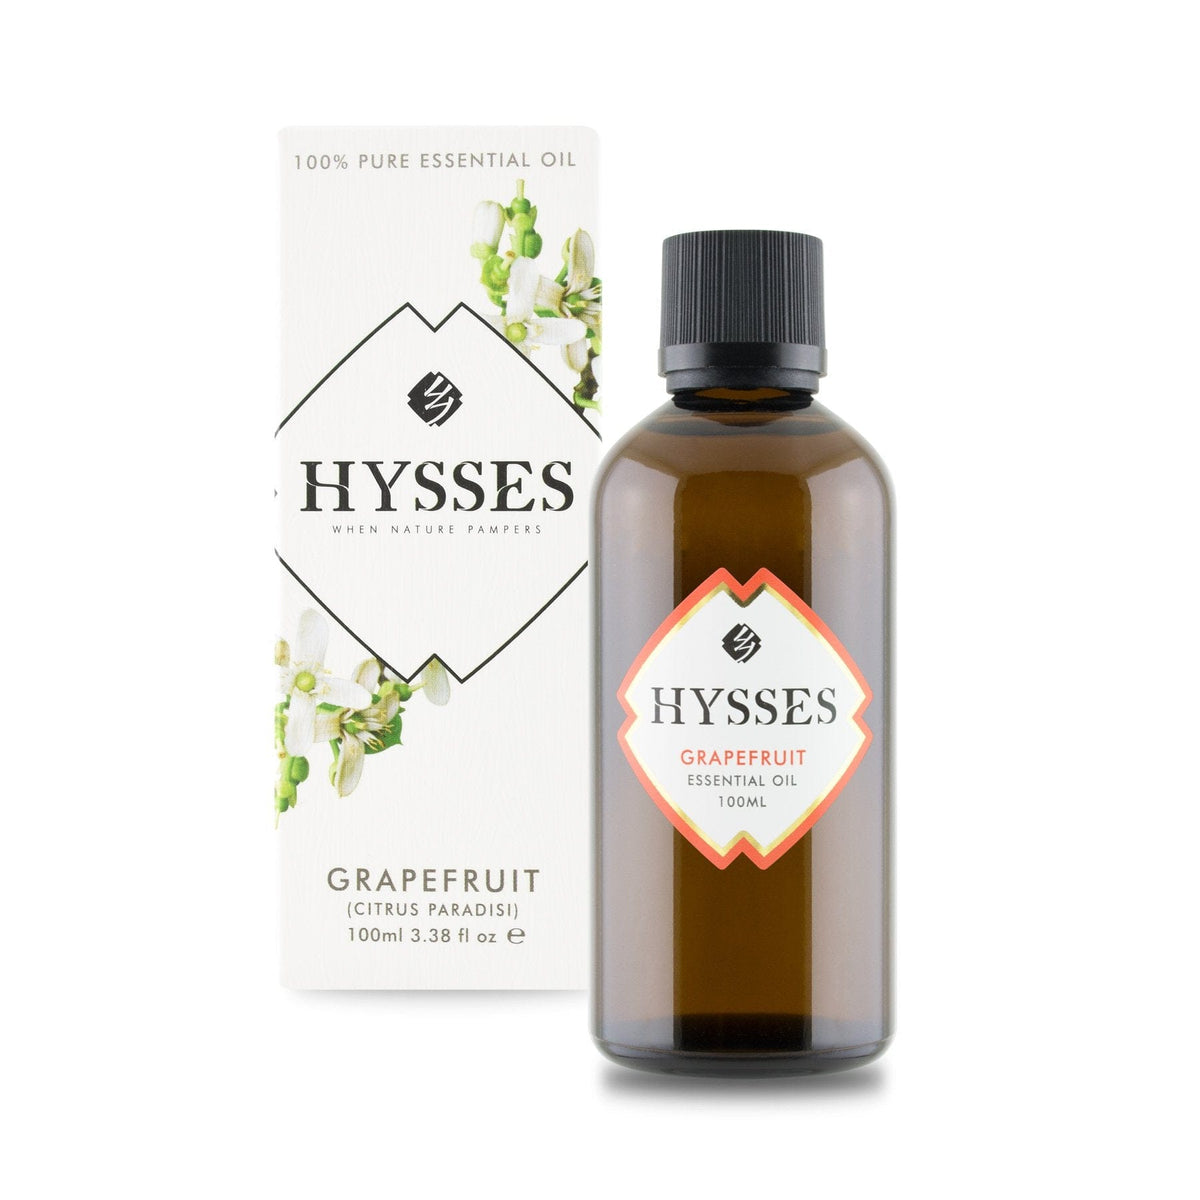 Hysses Essential Oil 100ml Essential Oil Grapefruit